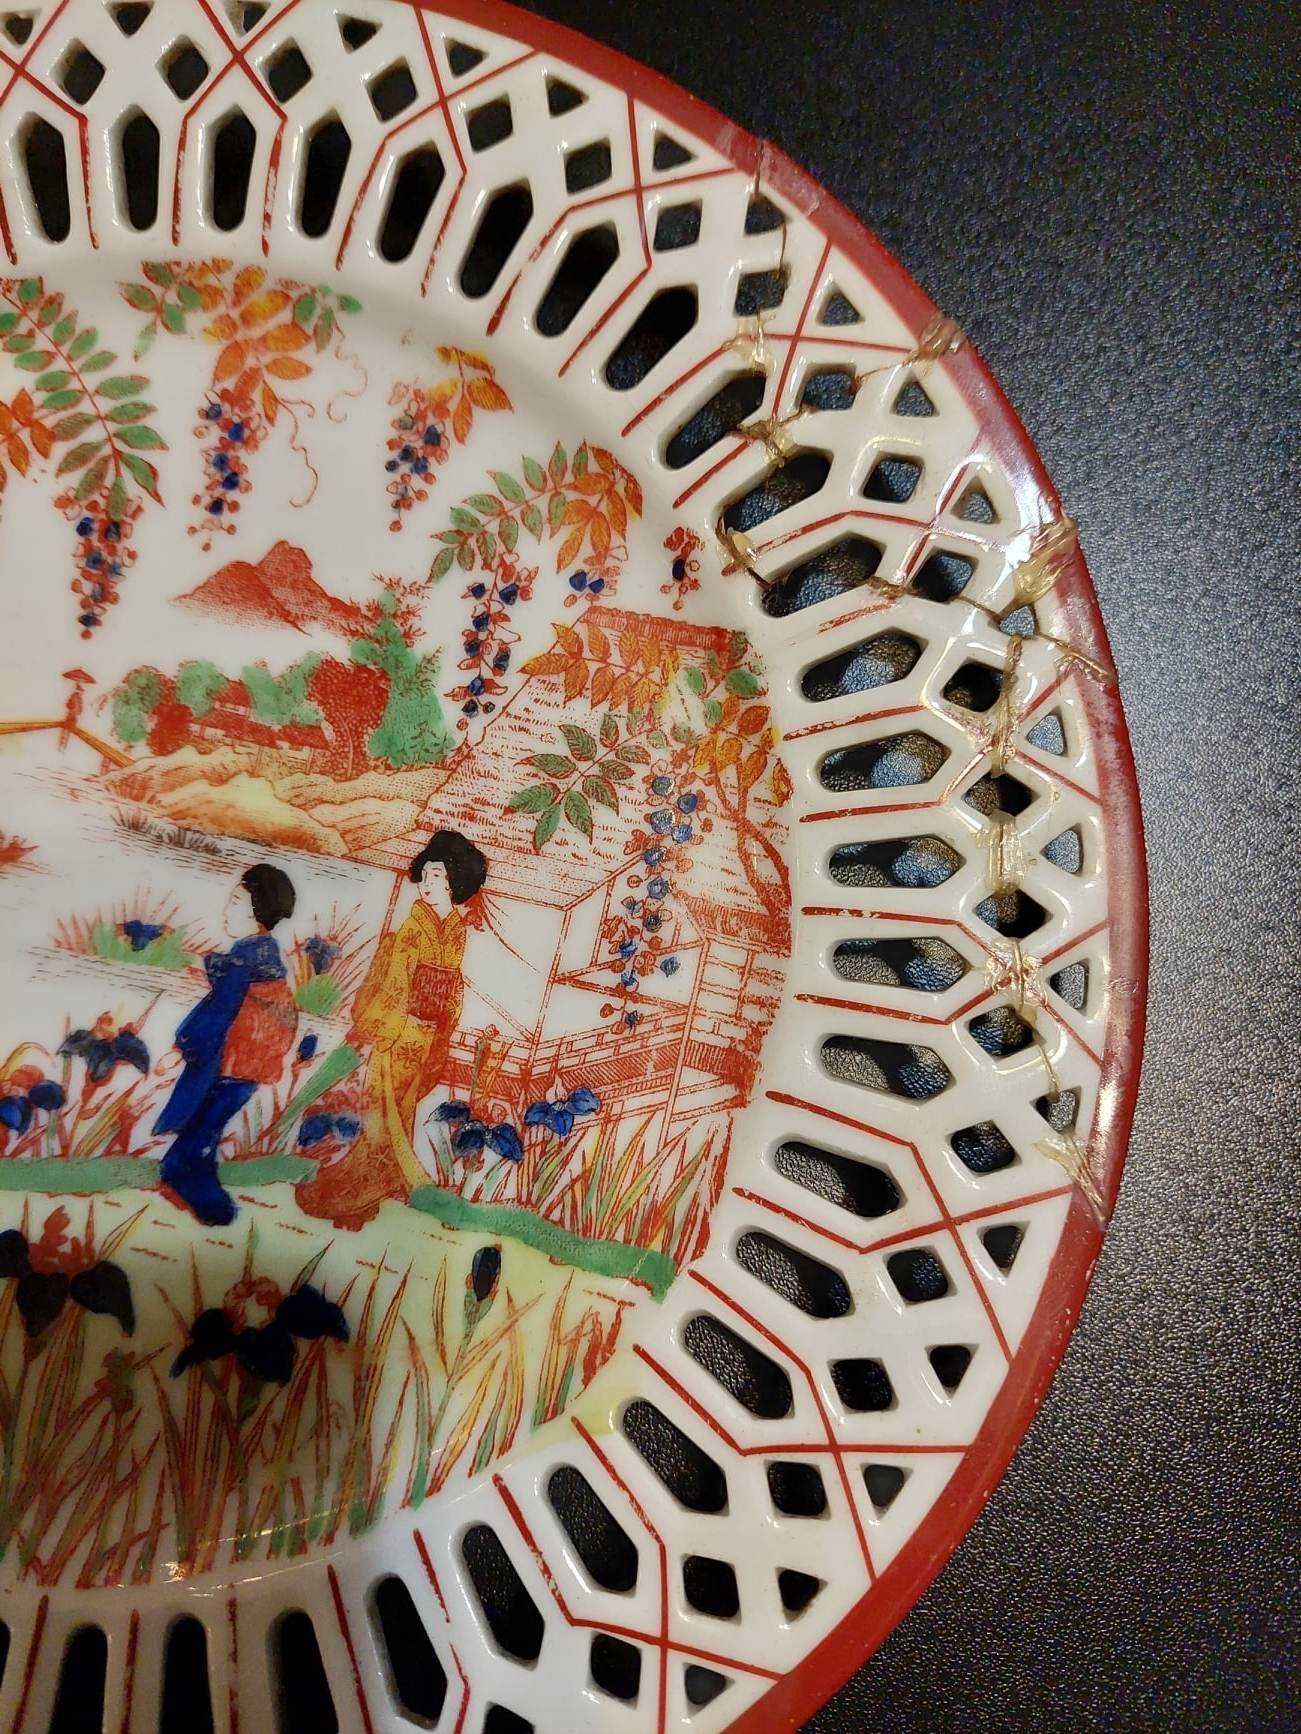 Stary talerz porcelana Victoria sygnatura japońska XIX/XX wiek